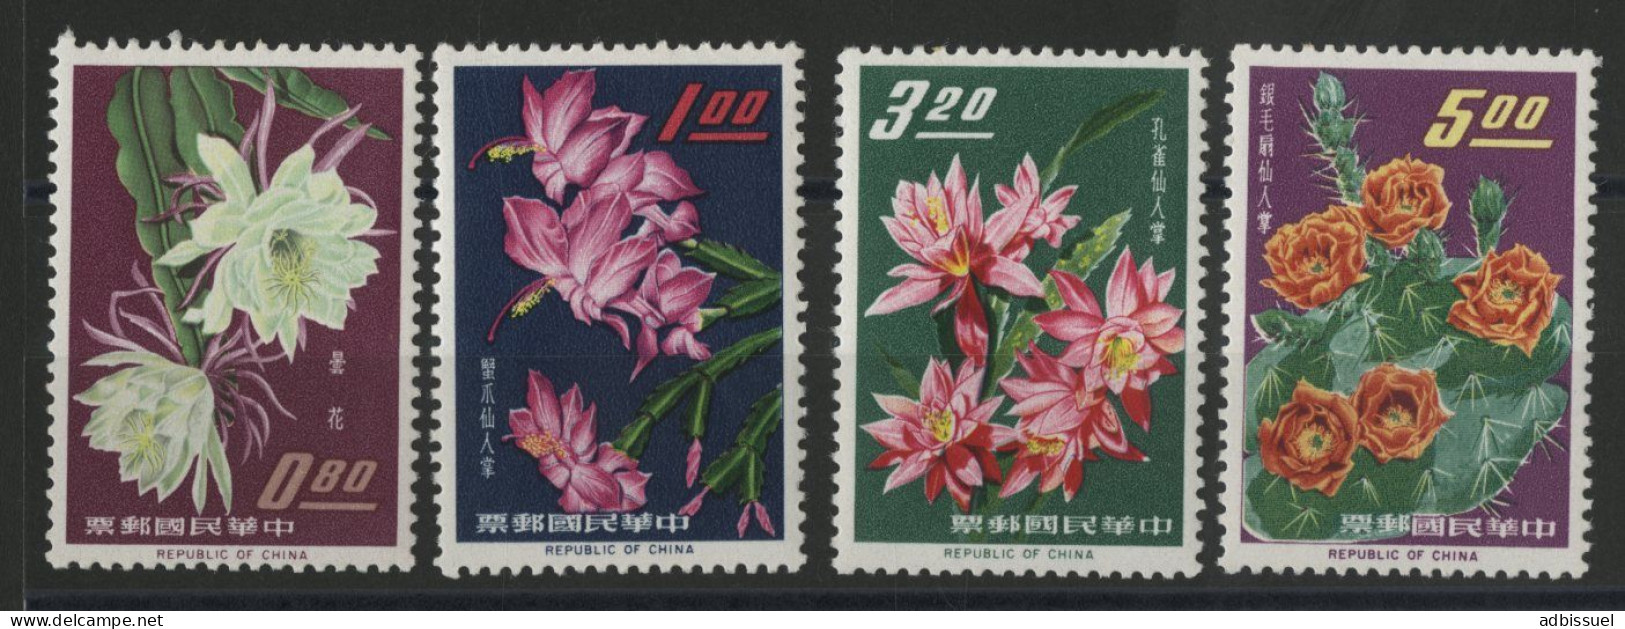 TAIWAN REPUBLIC OF CHINA Bloc N° 455 à 458 Neuf ** (MNH) FLEURS FLOWERS Qualité TB - Nuovi